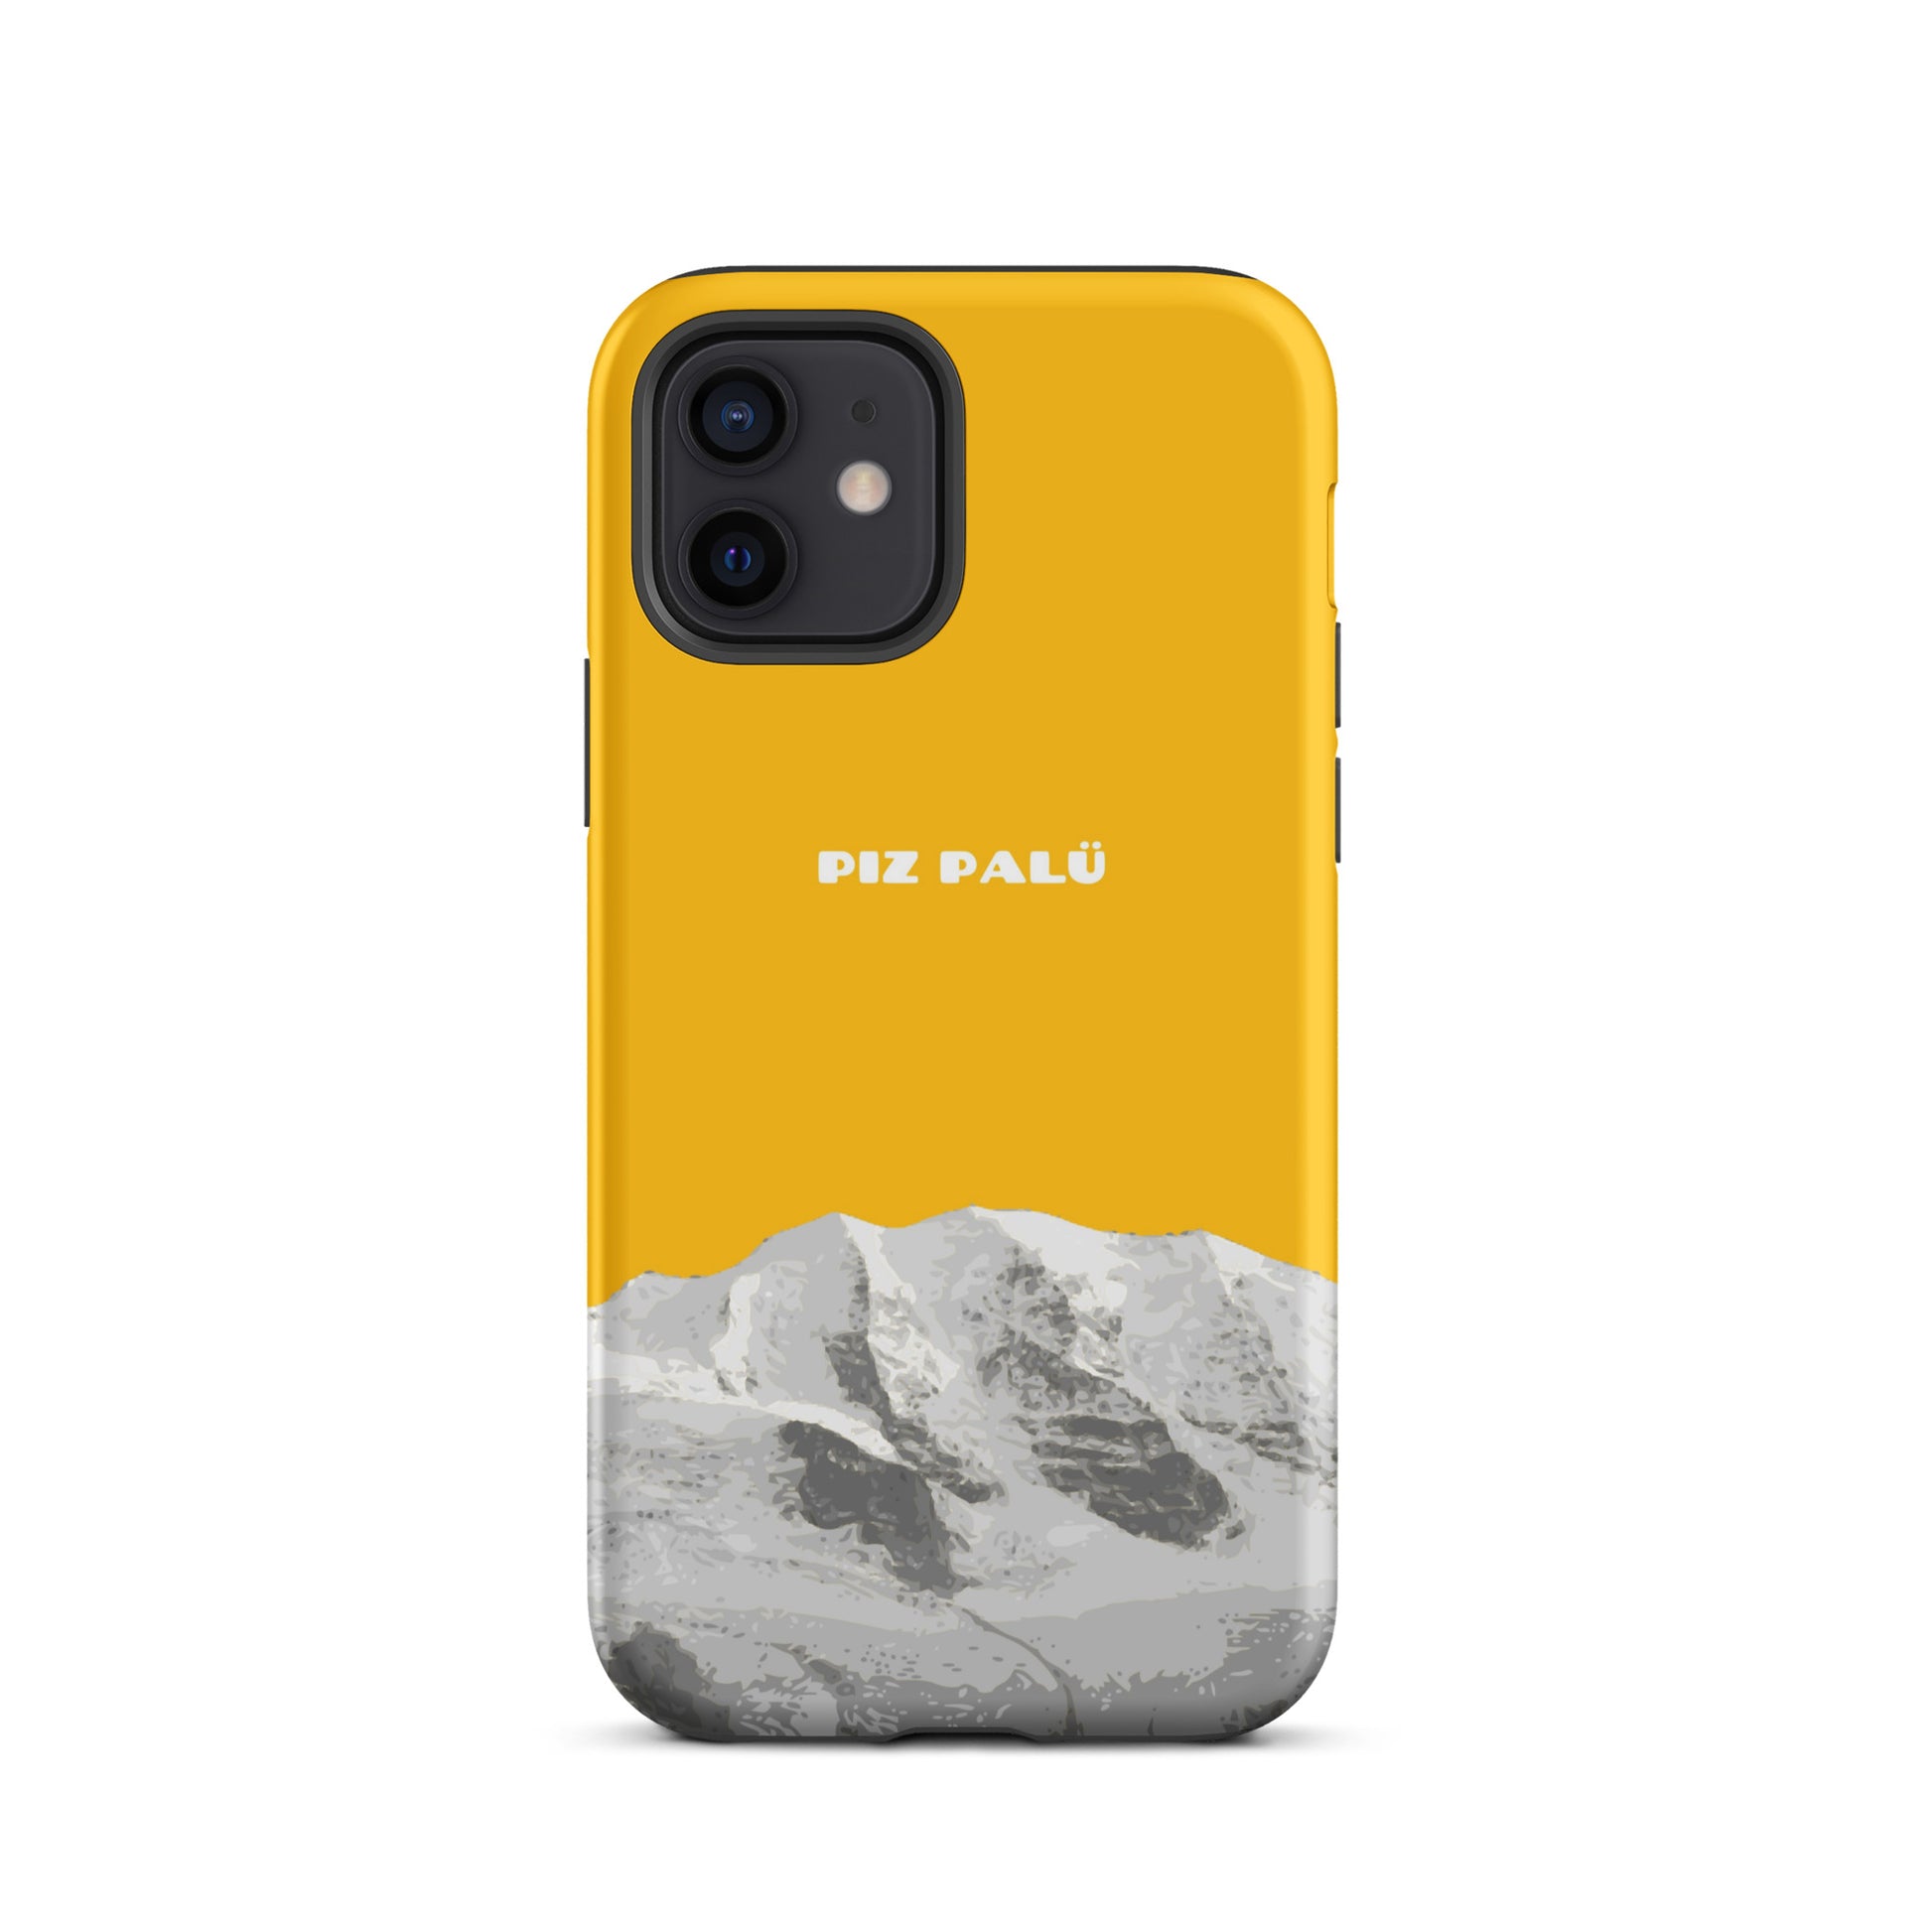 Hülle für das iPhone 12 von Apple in der Farbe Goldgelb, dass den Piz Palü in Graubünden zeigt.